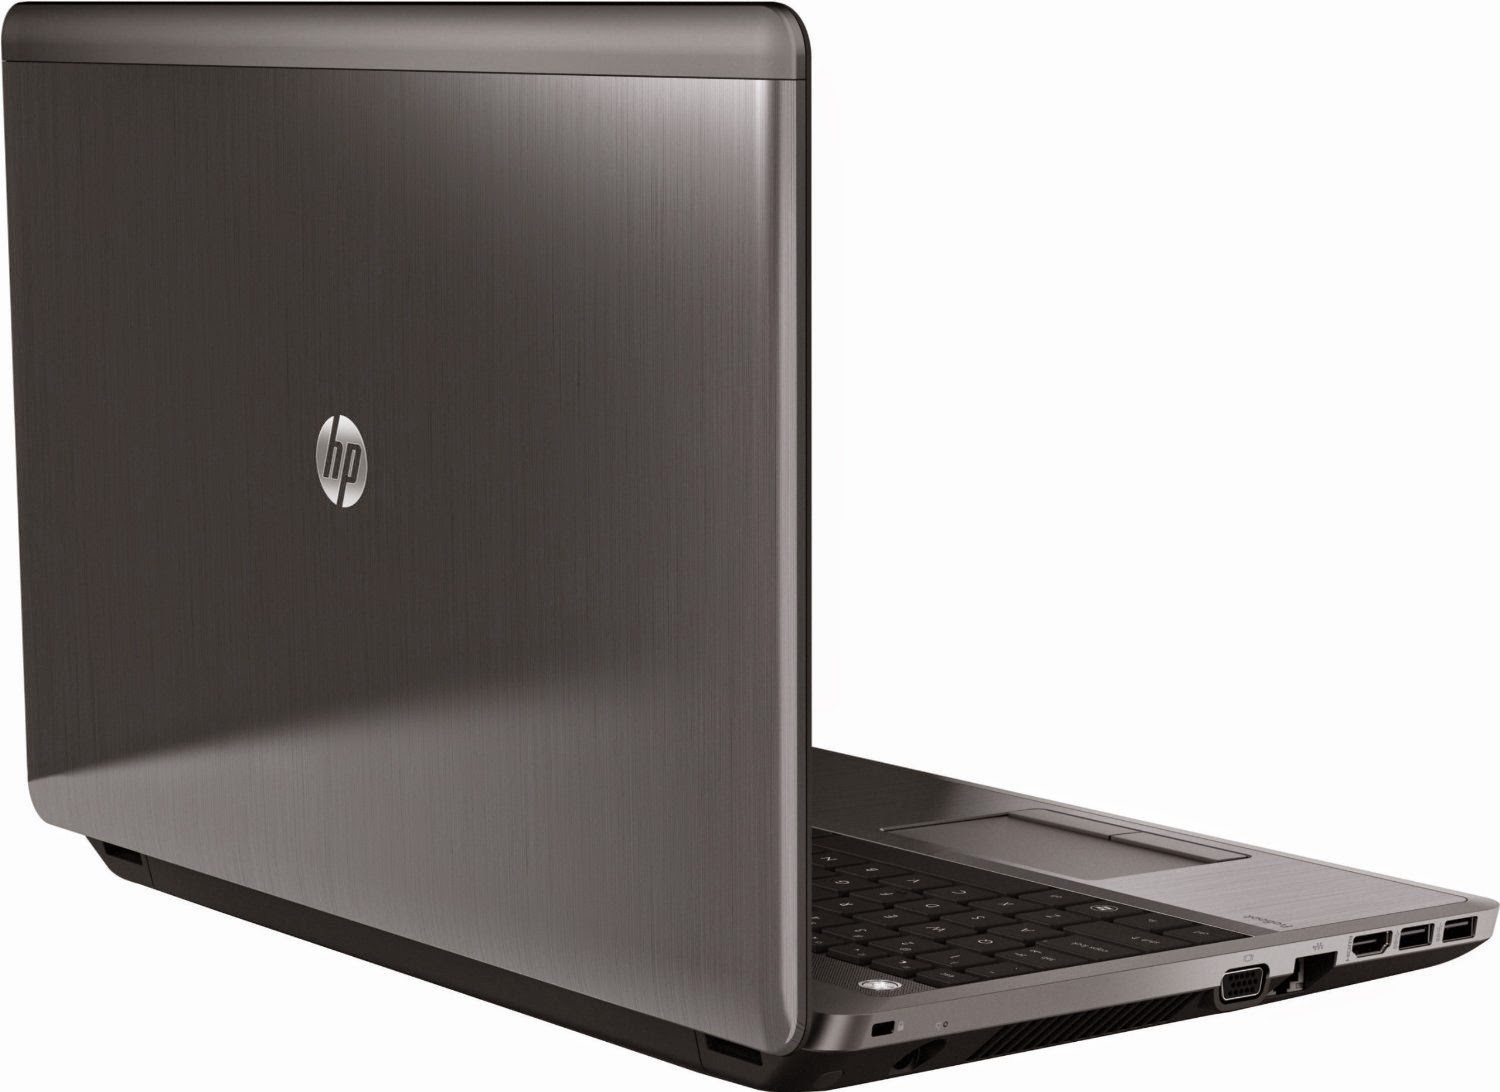 Harga Laptop Terbaru HP Januari 2015